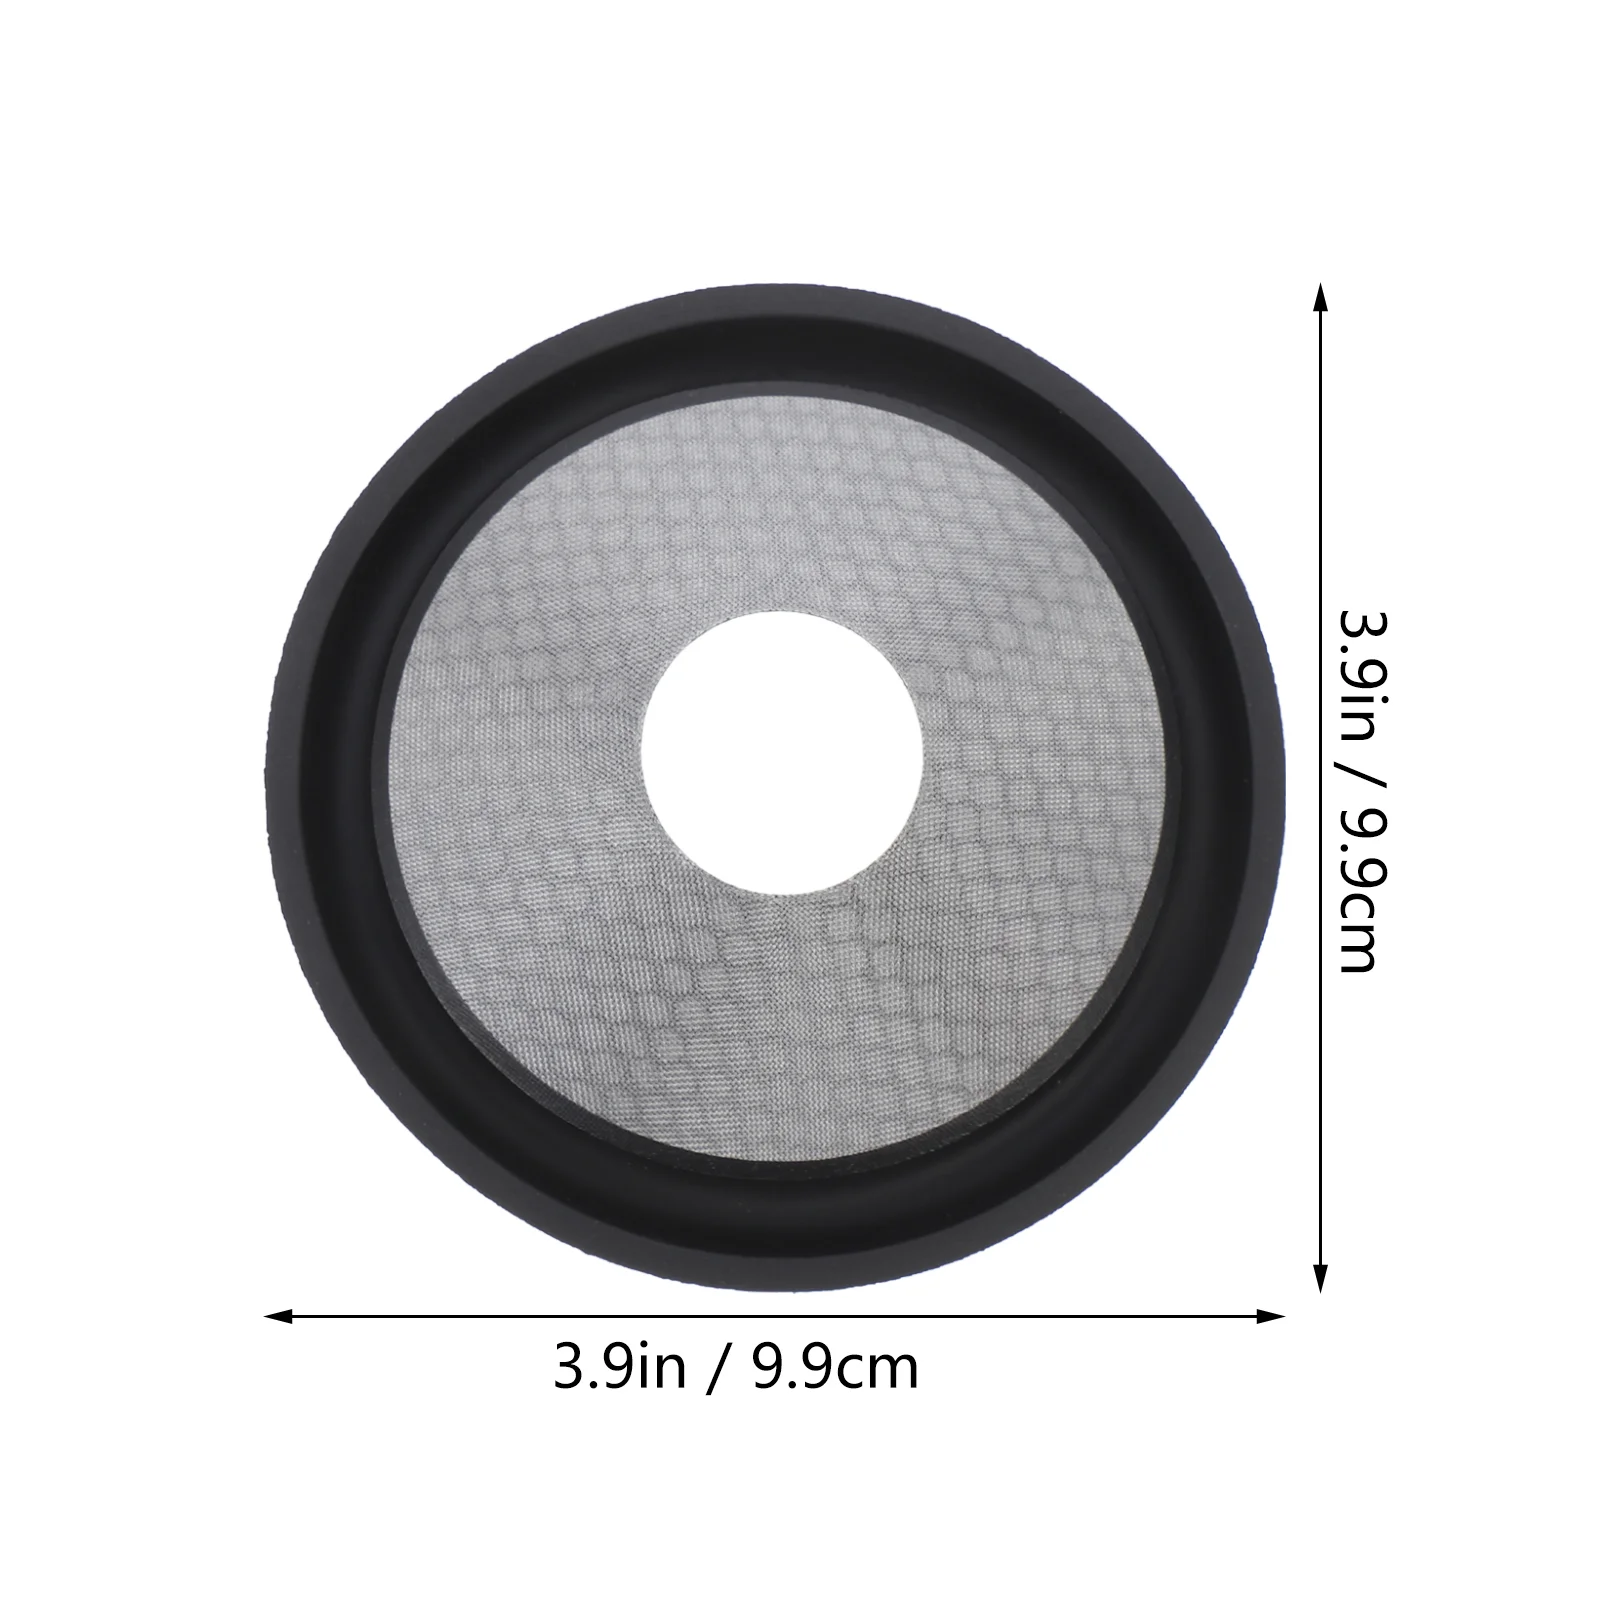 Speaker Cone 5 Inch Subwoofer Cone Aluminum Pp Speaker Part Speaker Supply enlarge